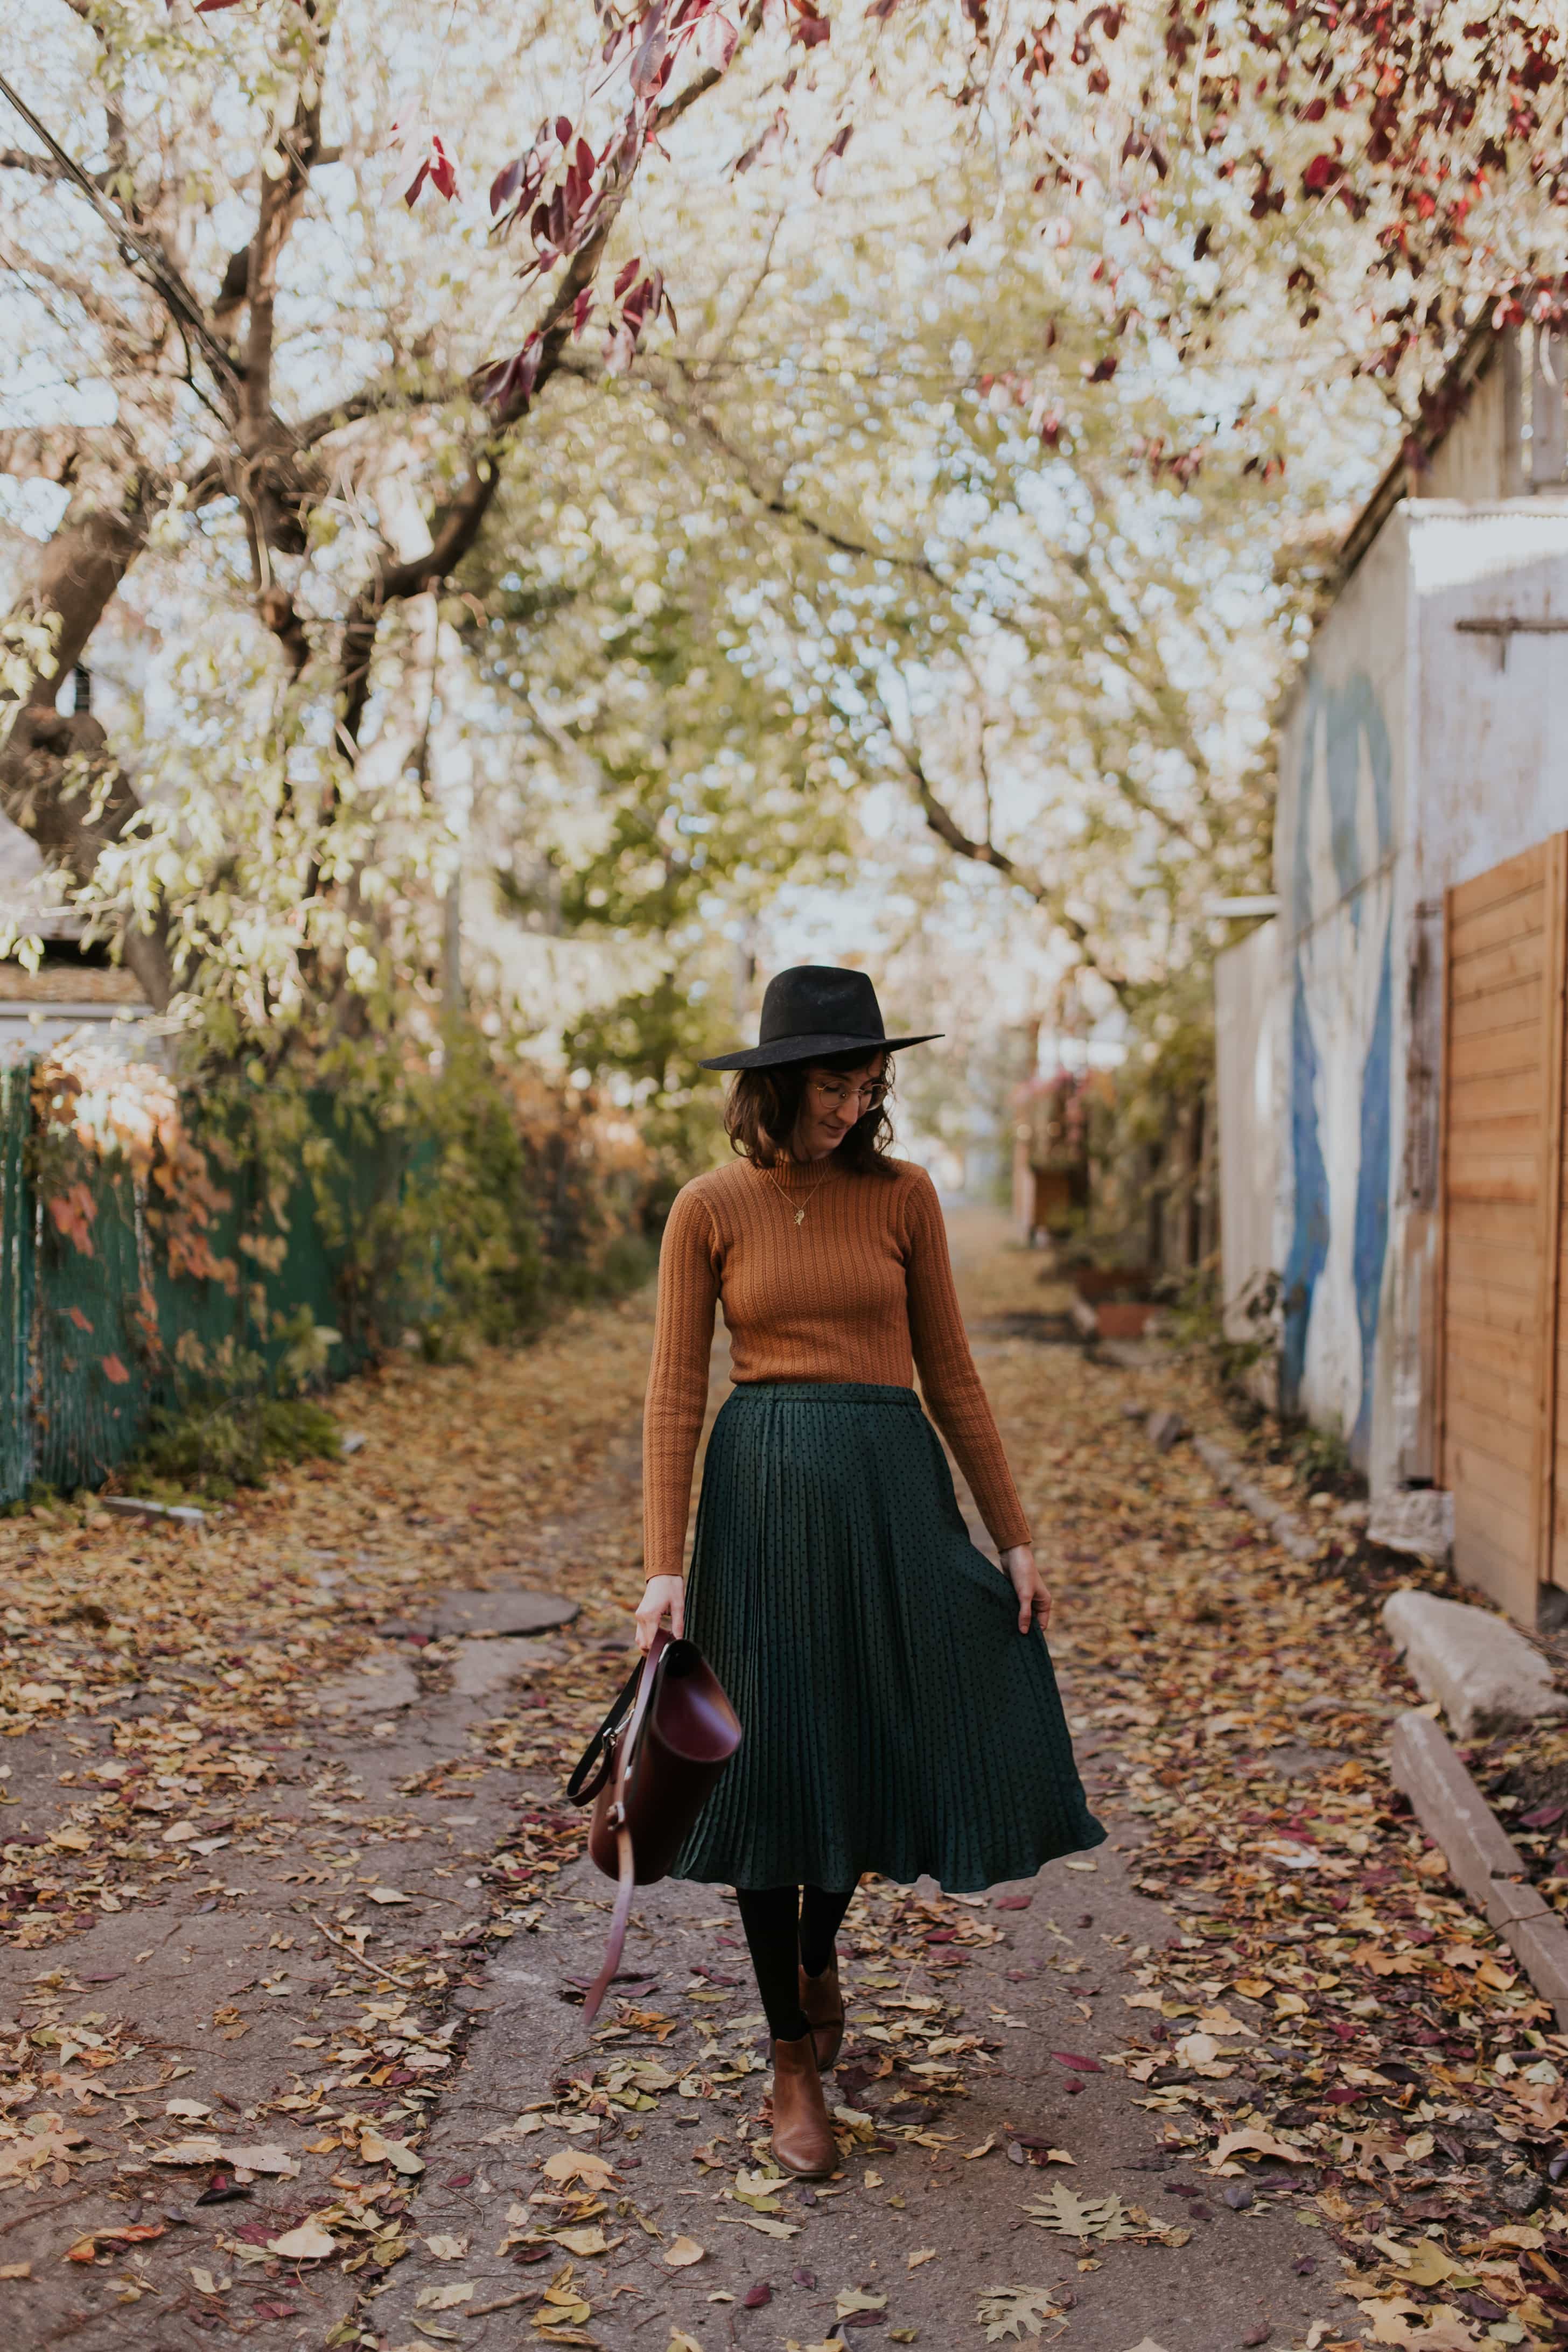 Jupe longue et chapeau de sorcière - La Mouette | Blog Lifestyle français  expatrié à Montréal - Mode, Culture u0026 Voyage